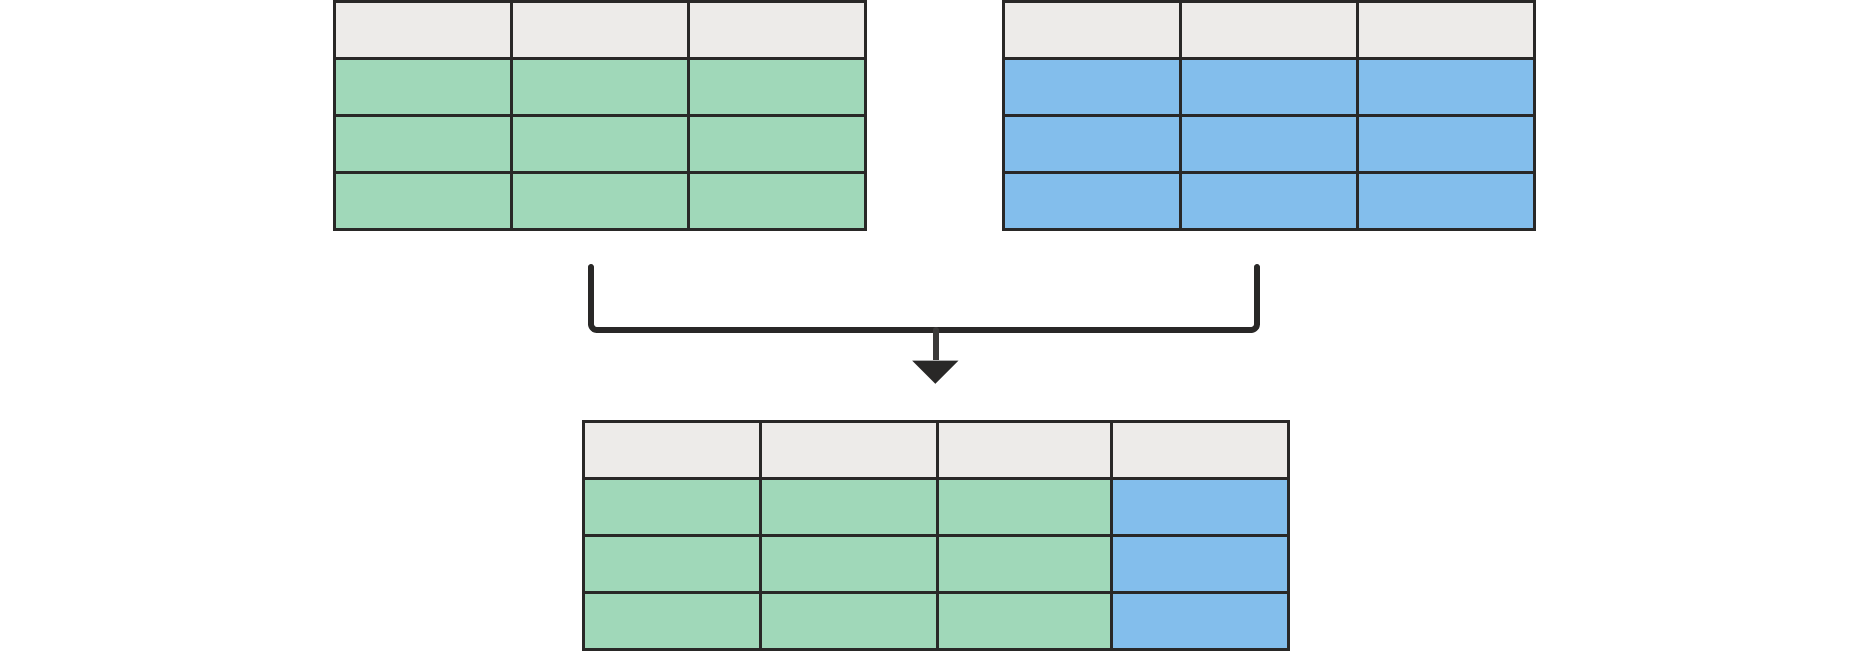 Diagram met twee lege tabellen bovenaan samengevoegd met een tabel onderaan met alle kolommen uit de linkertabel en één uit de rechtertabel.